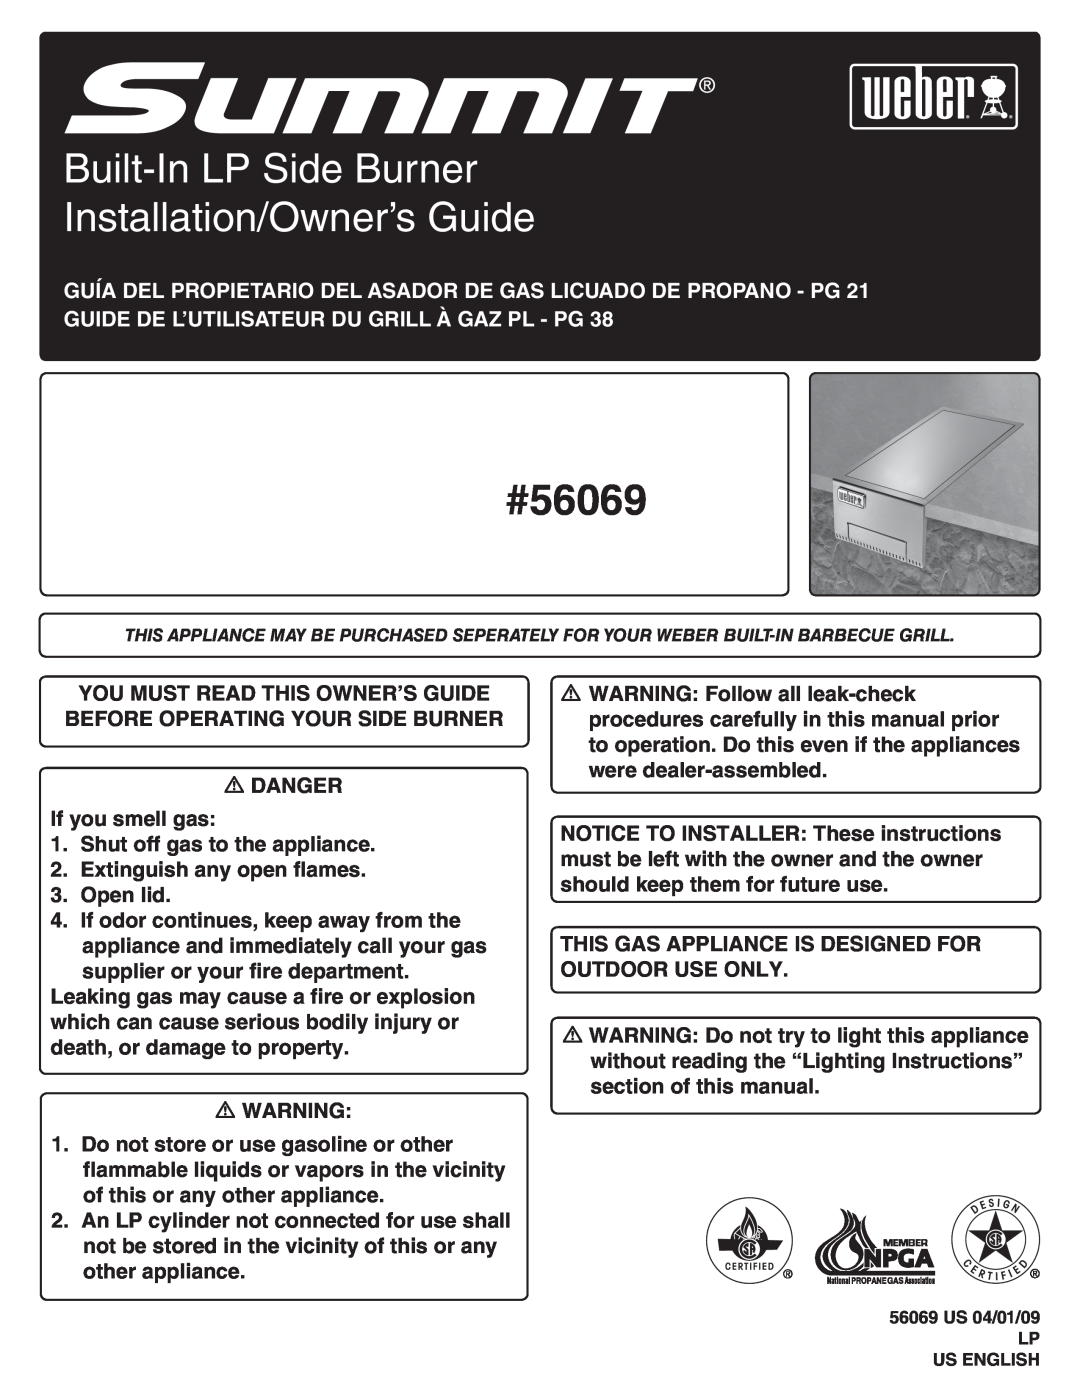 Weber manual #56069, Built-In LP Side Burner Installation/Owner’s Guide 